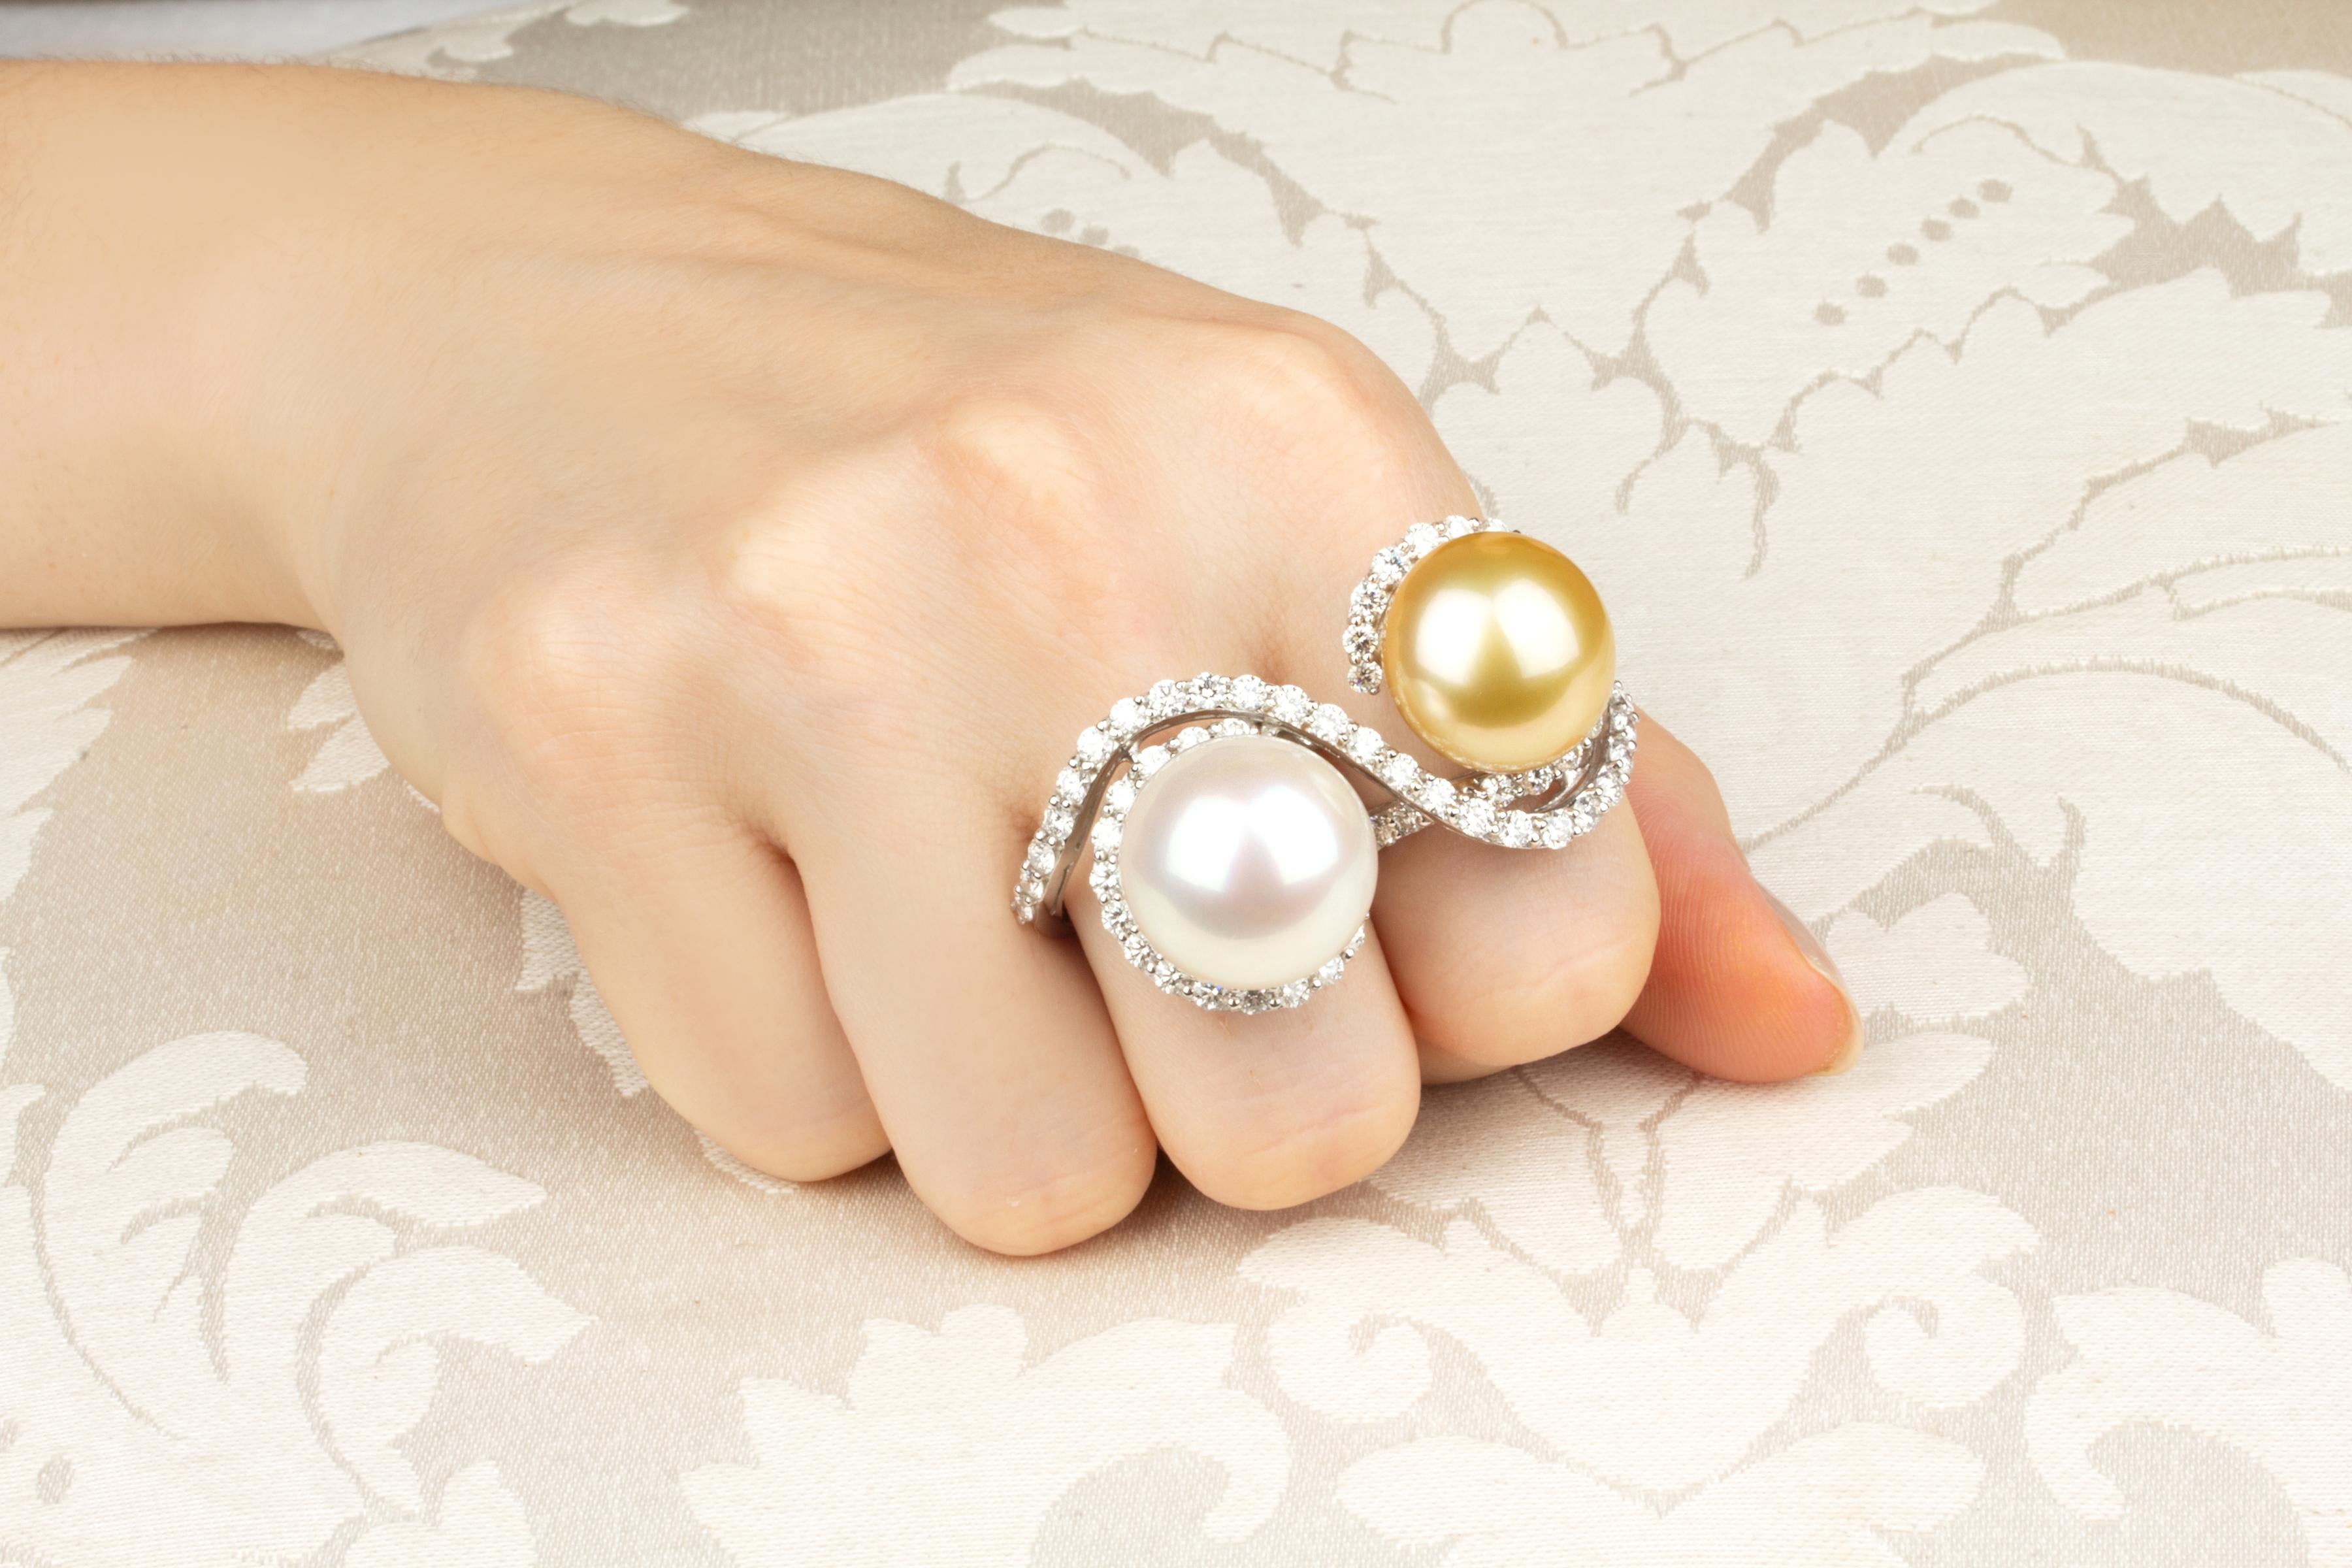 Dieser Ring mit zwei Fingern aus Perlen und Diamanten besteht aus einer prächtigen australischen Südseeperle und einer ebenso prächtigen goldenen Perle, beide mit 17 mm Durchmesser. Die unbehandelten Perlen weisen eine feine Perlmuttqualität auf und